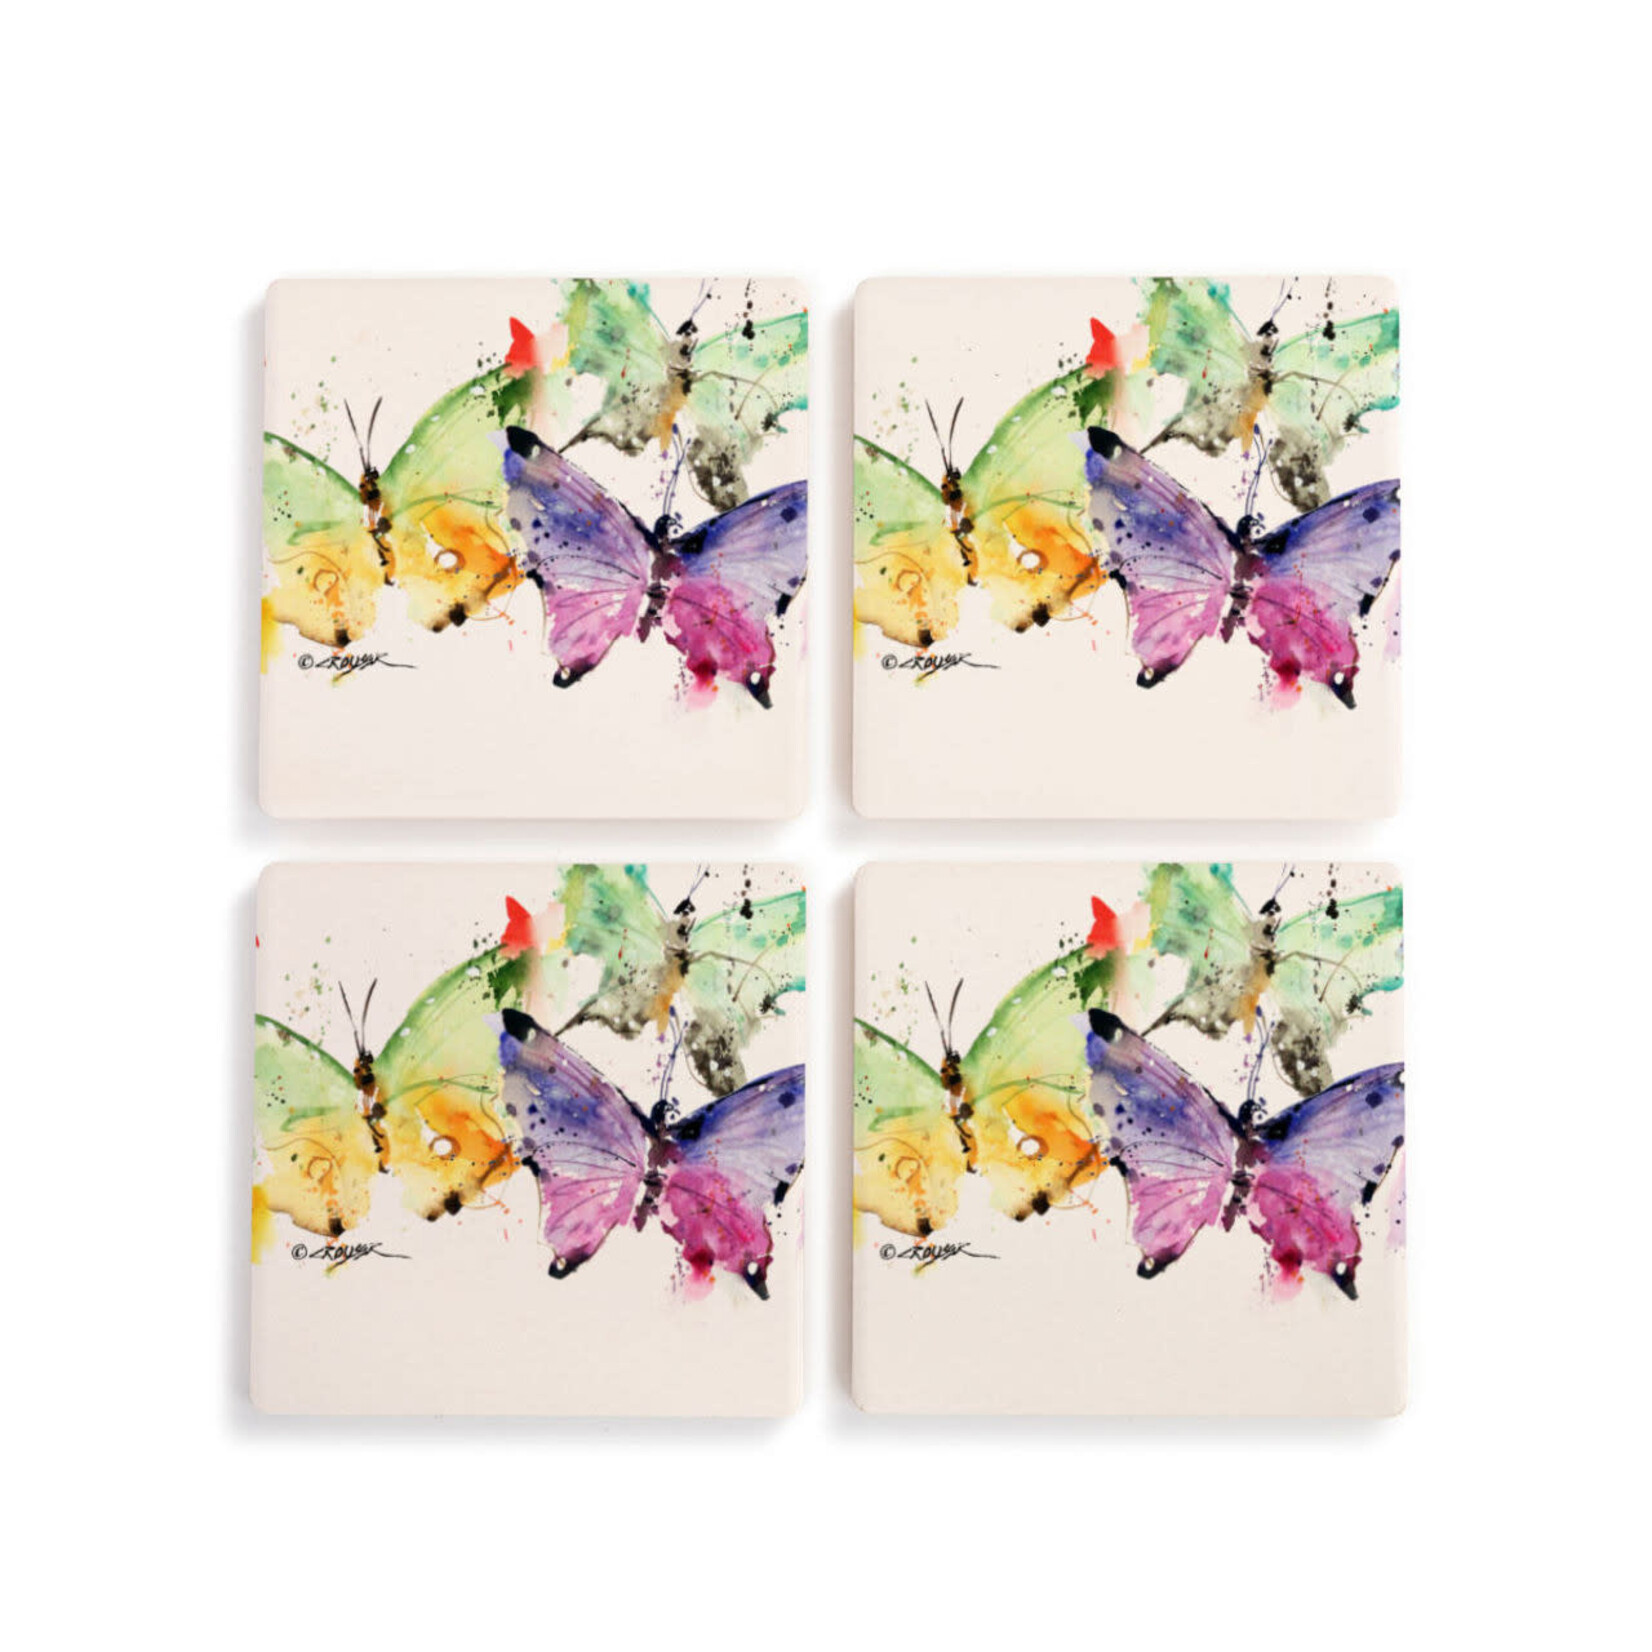 Dean Crouser Butterflies Coasters - Set